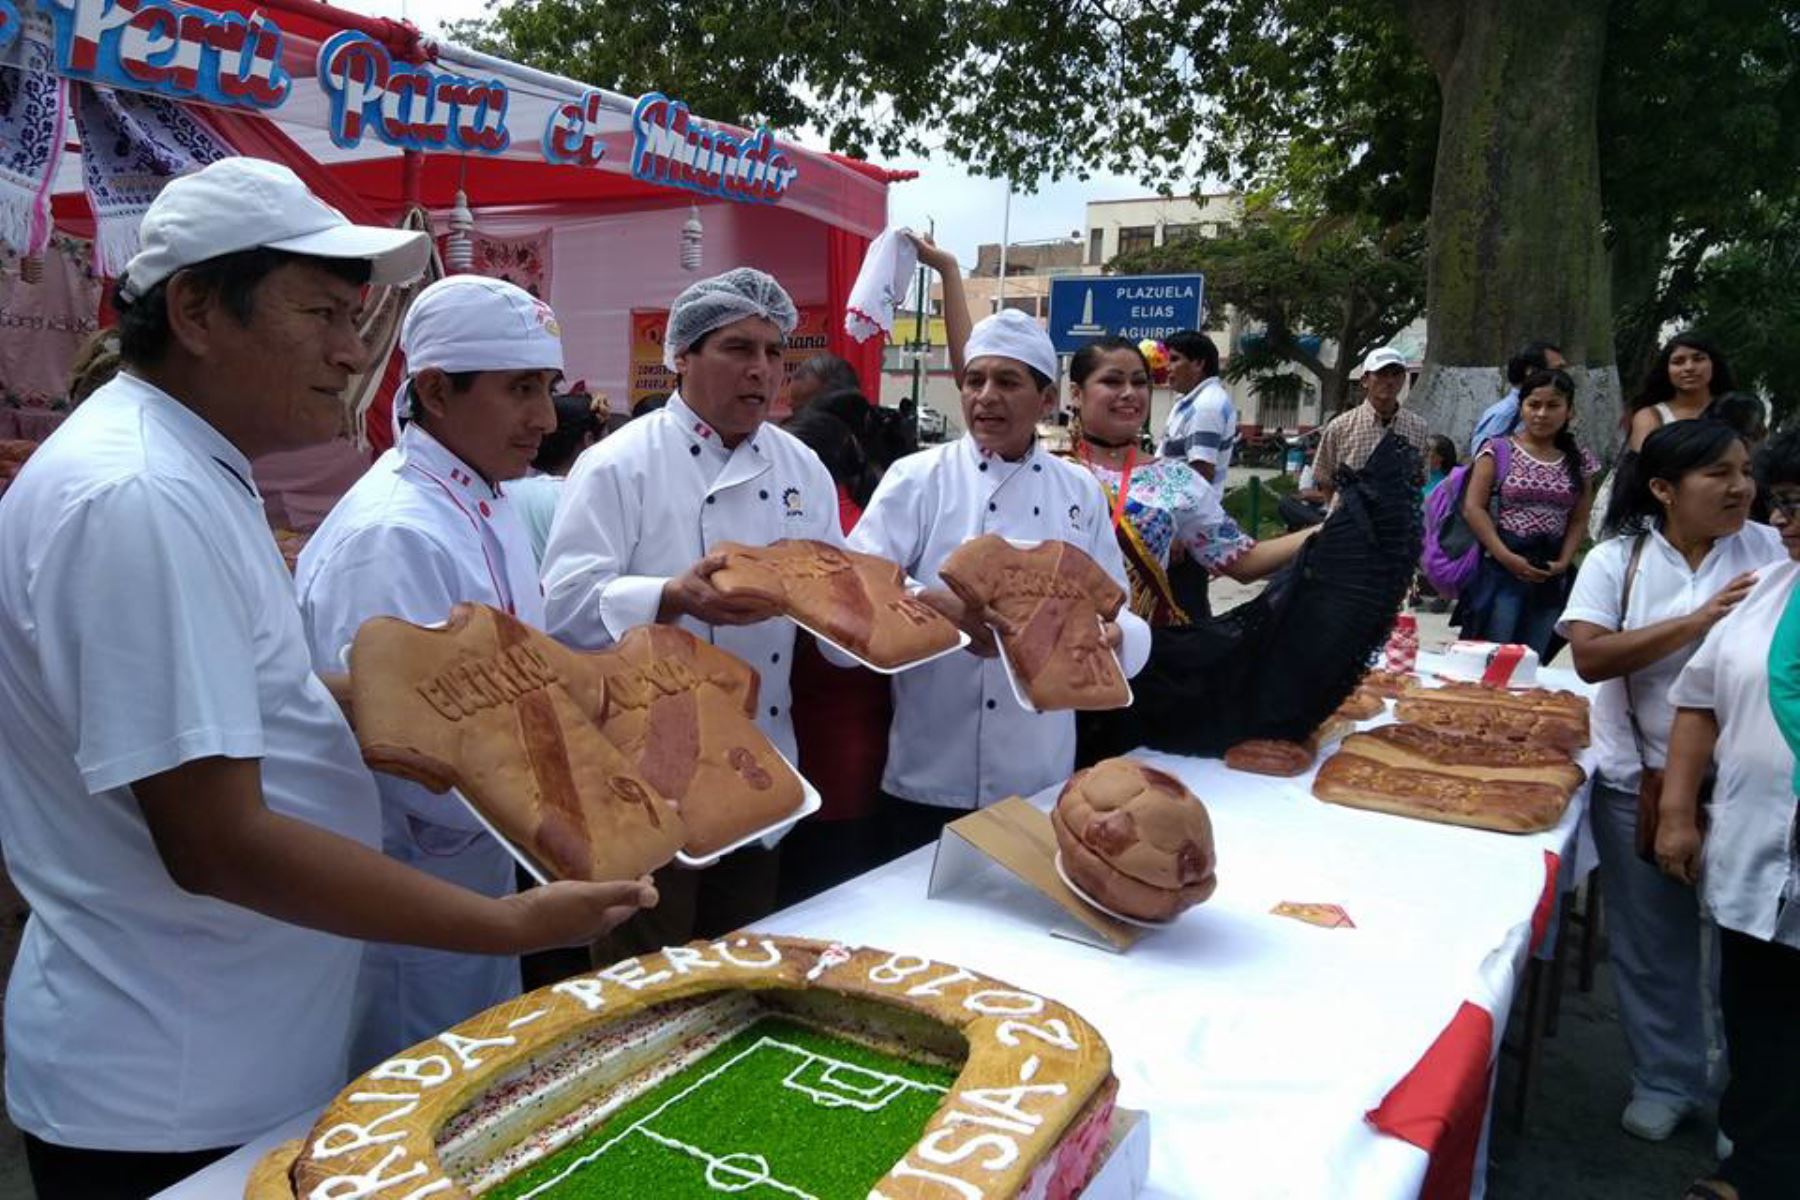 Maestros panificadores de Monsefú, en Lambayeque, elaboran panes gigantes con diseños alusivos al Mundial de Rusia 2018. Foto: ANDINA.